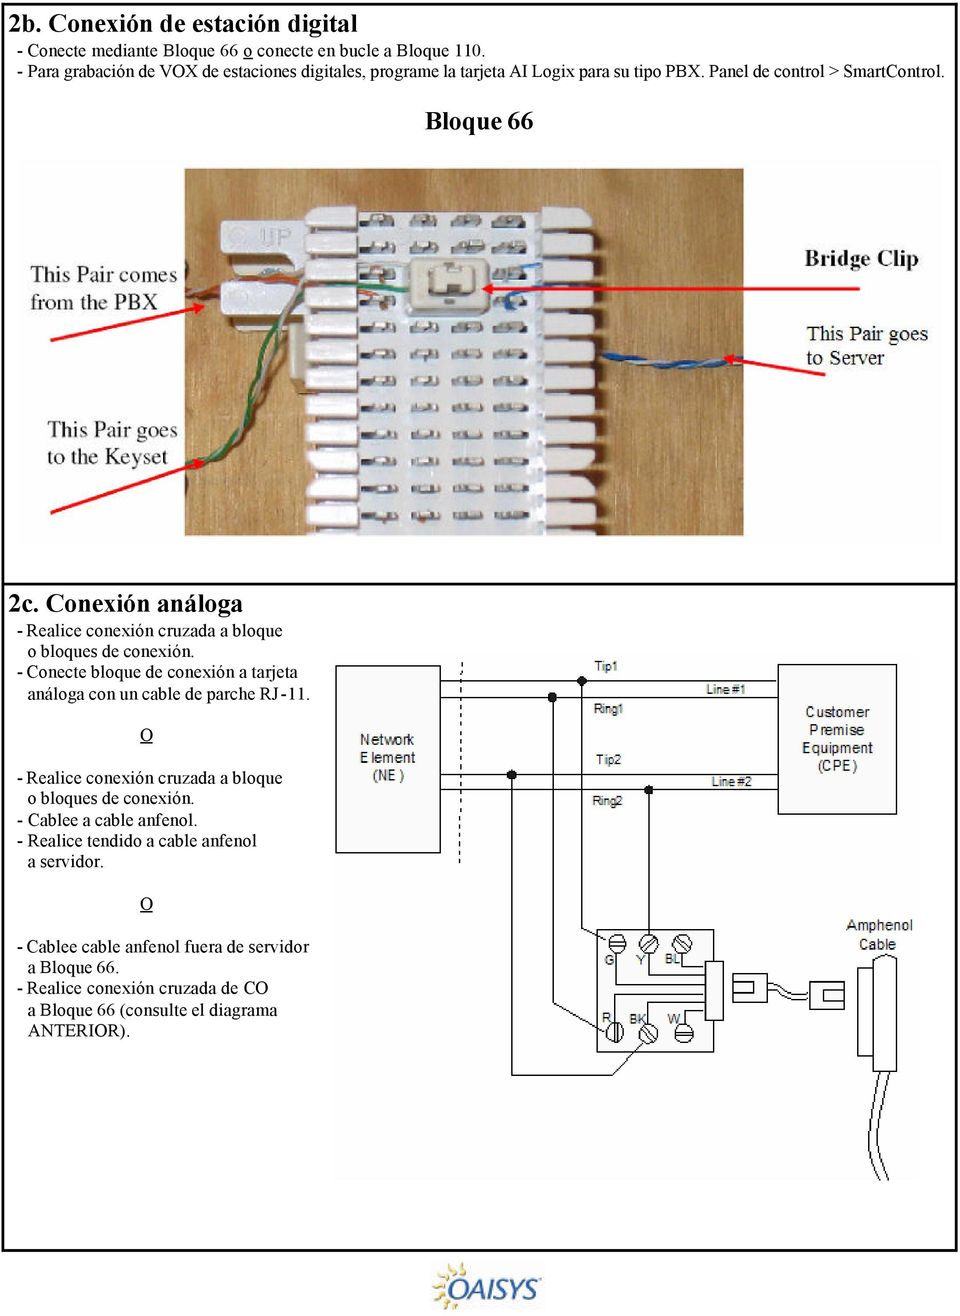 Conexión análoga - Realice conexión cruzada a bloque o bloques de conexión. - Conecte bloque de conexión a tarjeta análoga con un cable de parche RJ-11.